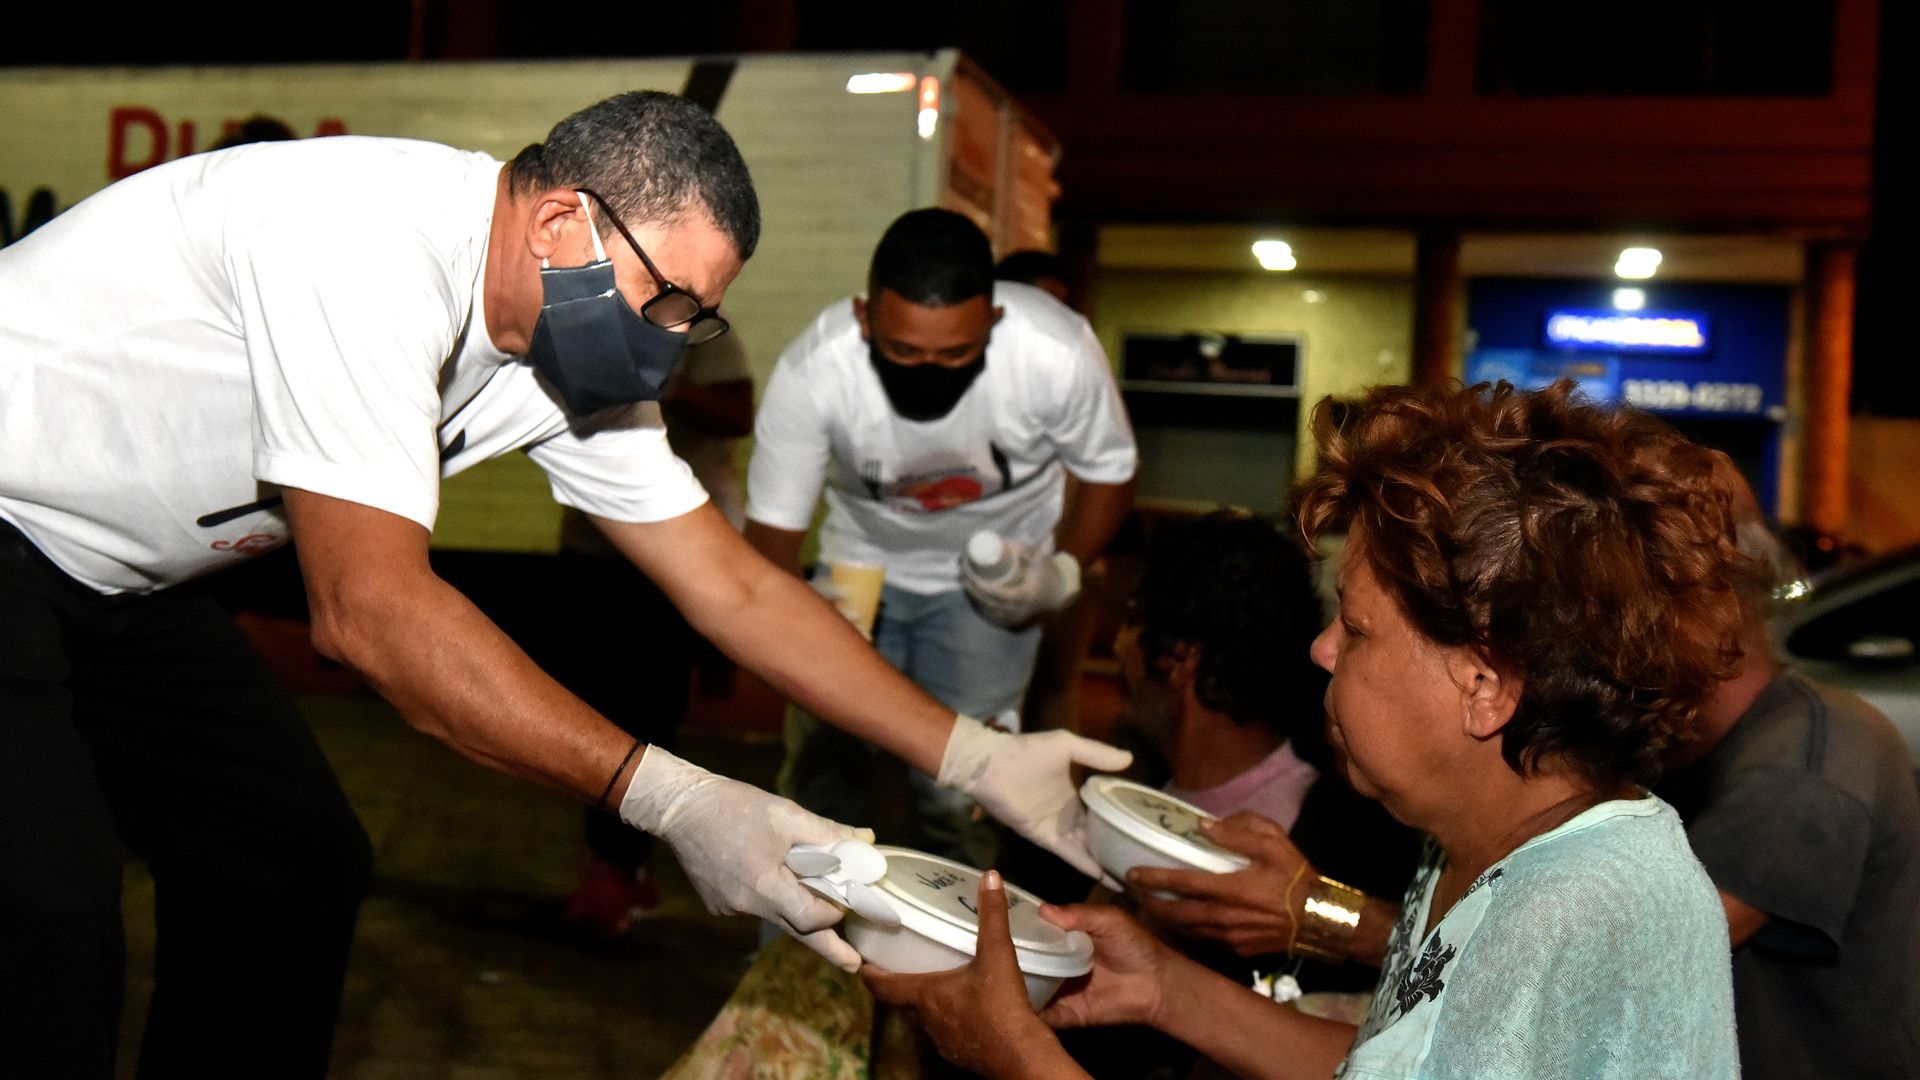 Marmita solidária - Grupo de voluntários que distribui refeições para pessoas em situação de rua, em Vila Velha 